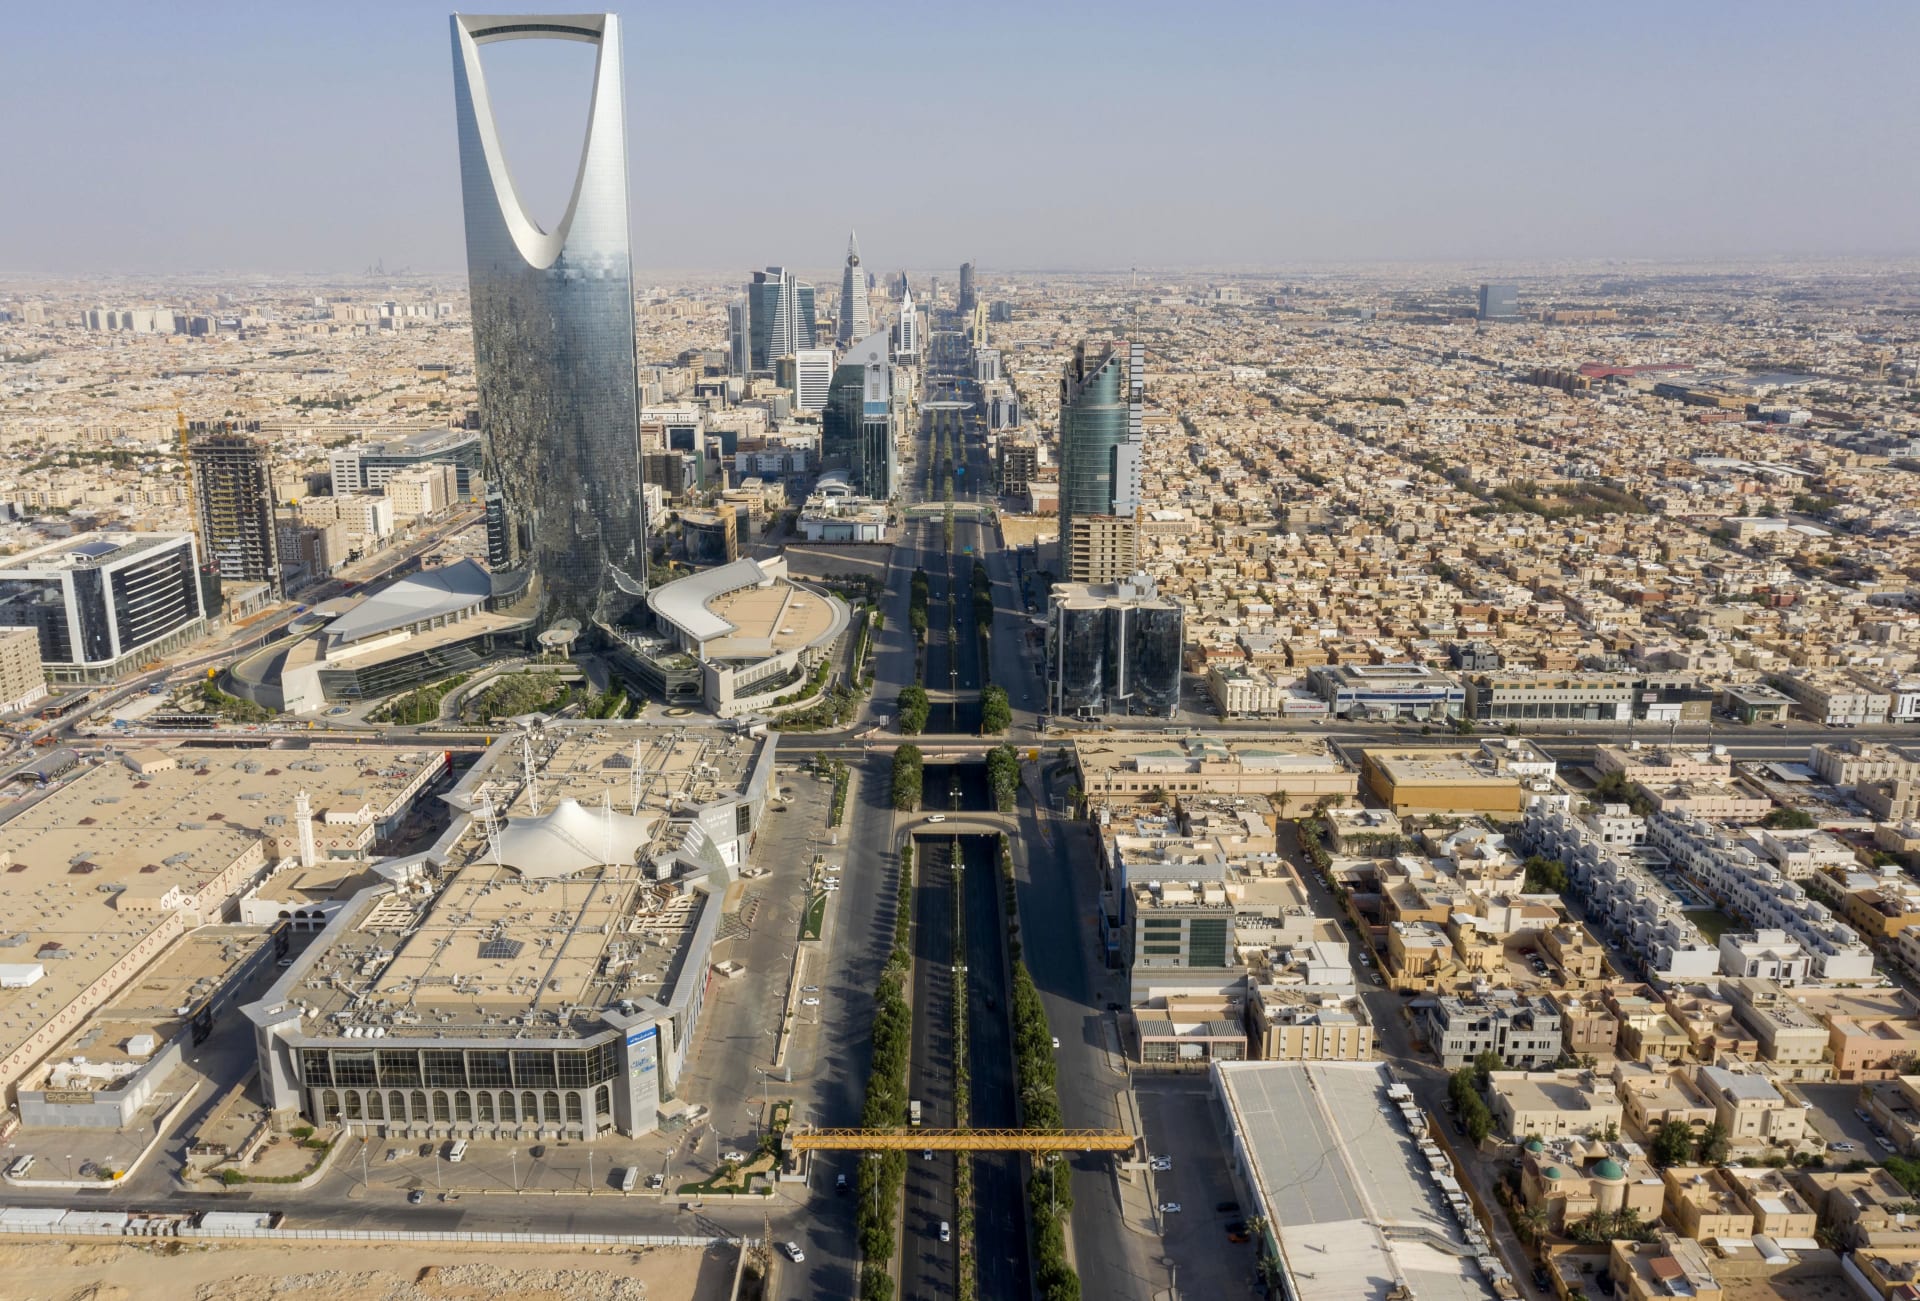 فوز السعودية بتنظيم معرض "اكسبو 2030" في الرياض